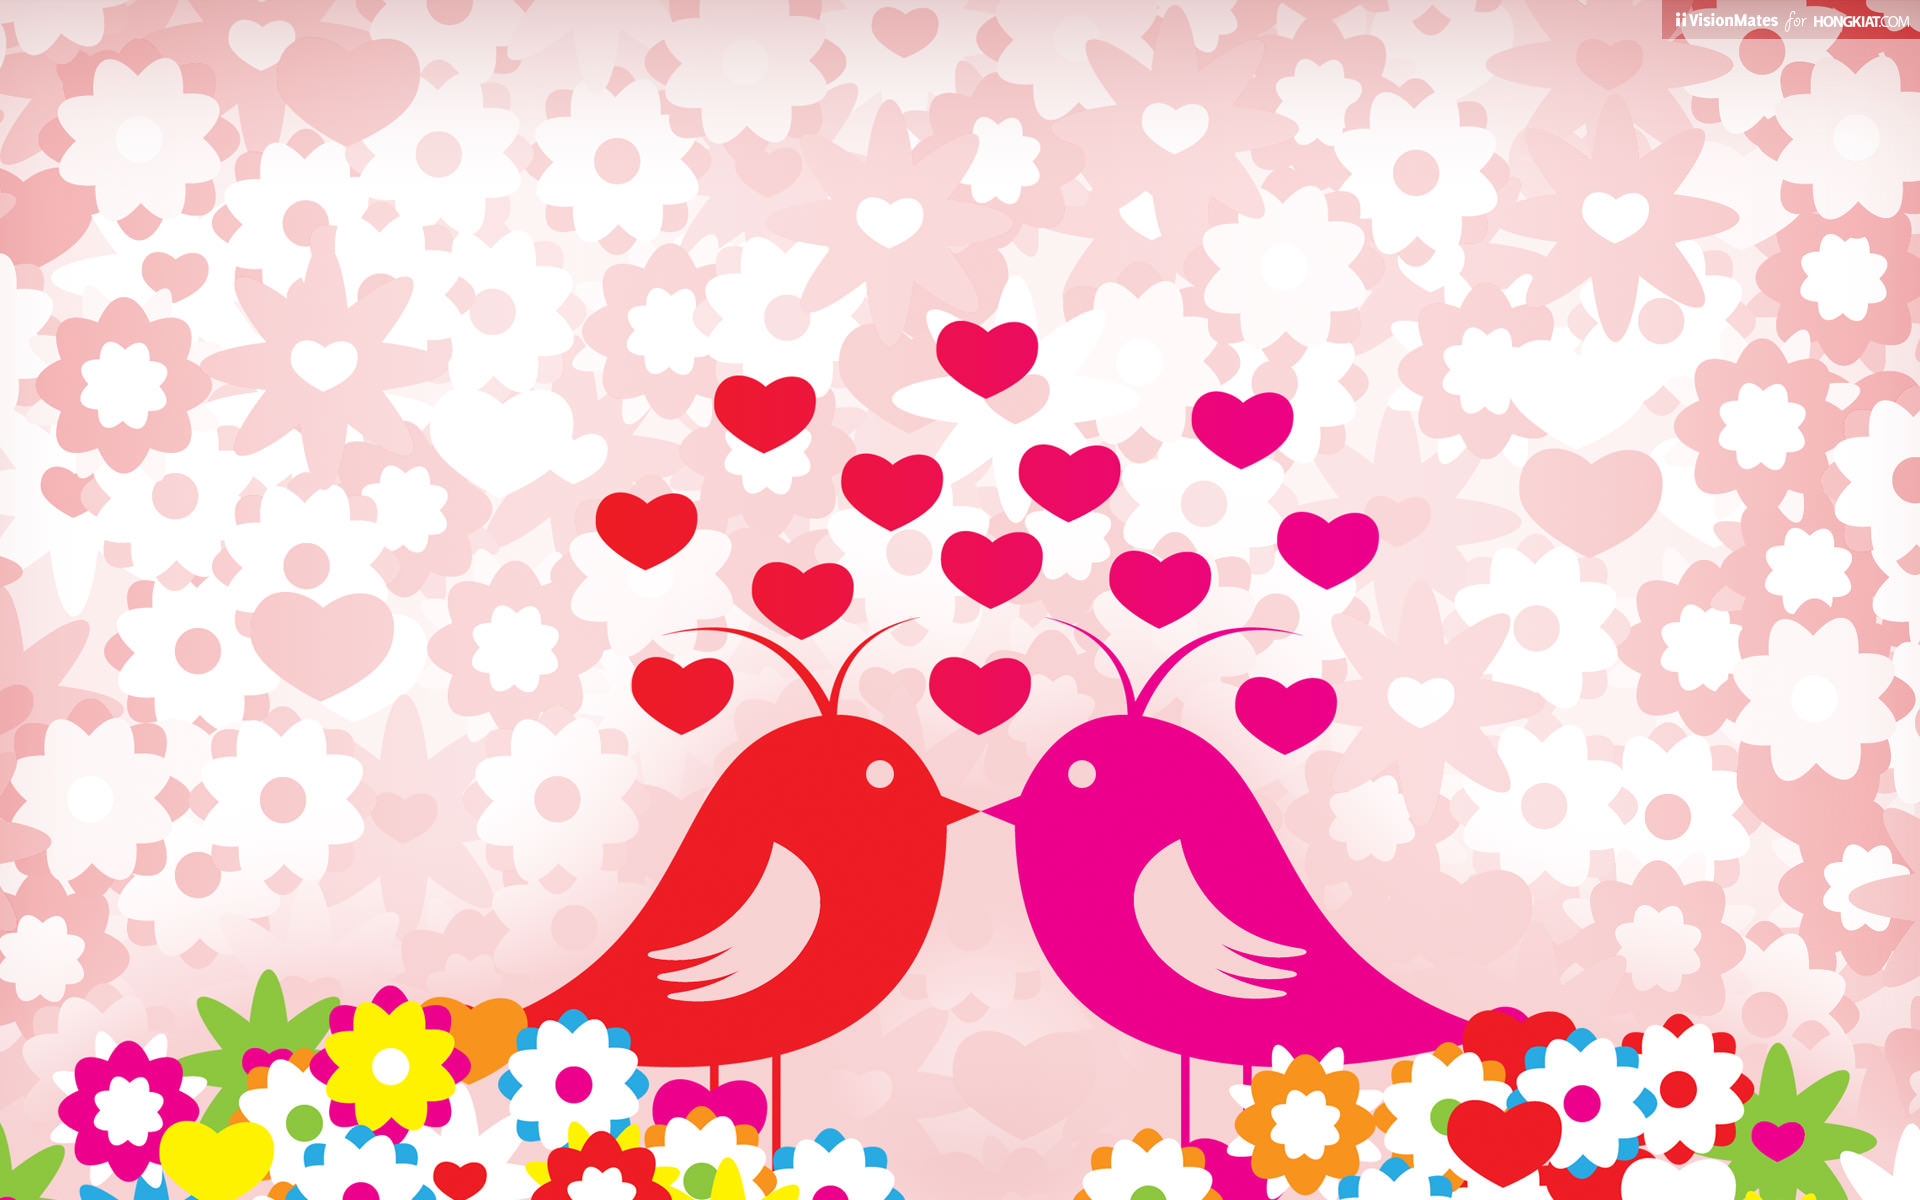 Love Birds5194314702 - Love Birds - Pure, Love, Birds